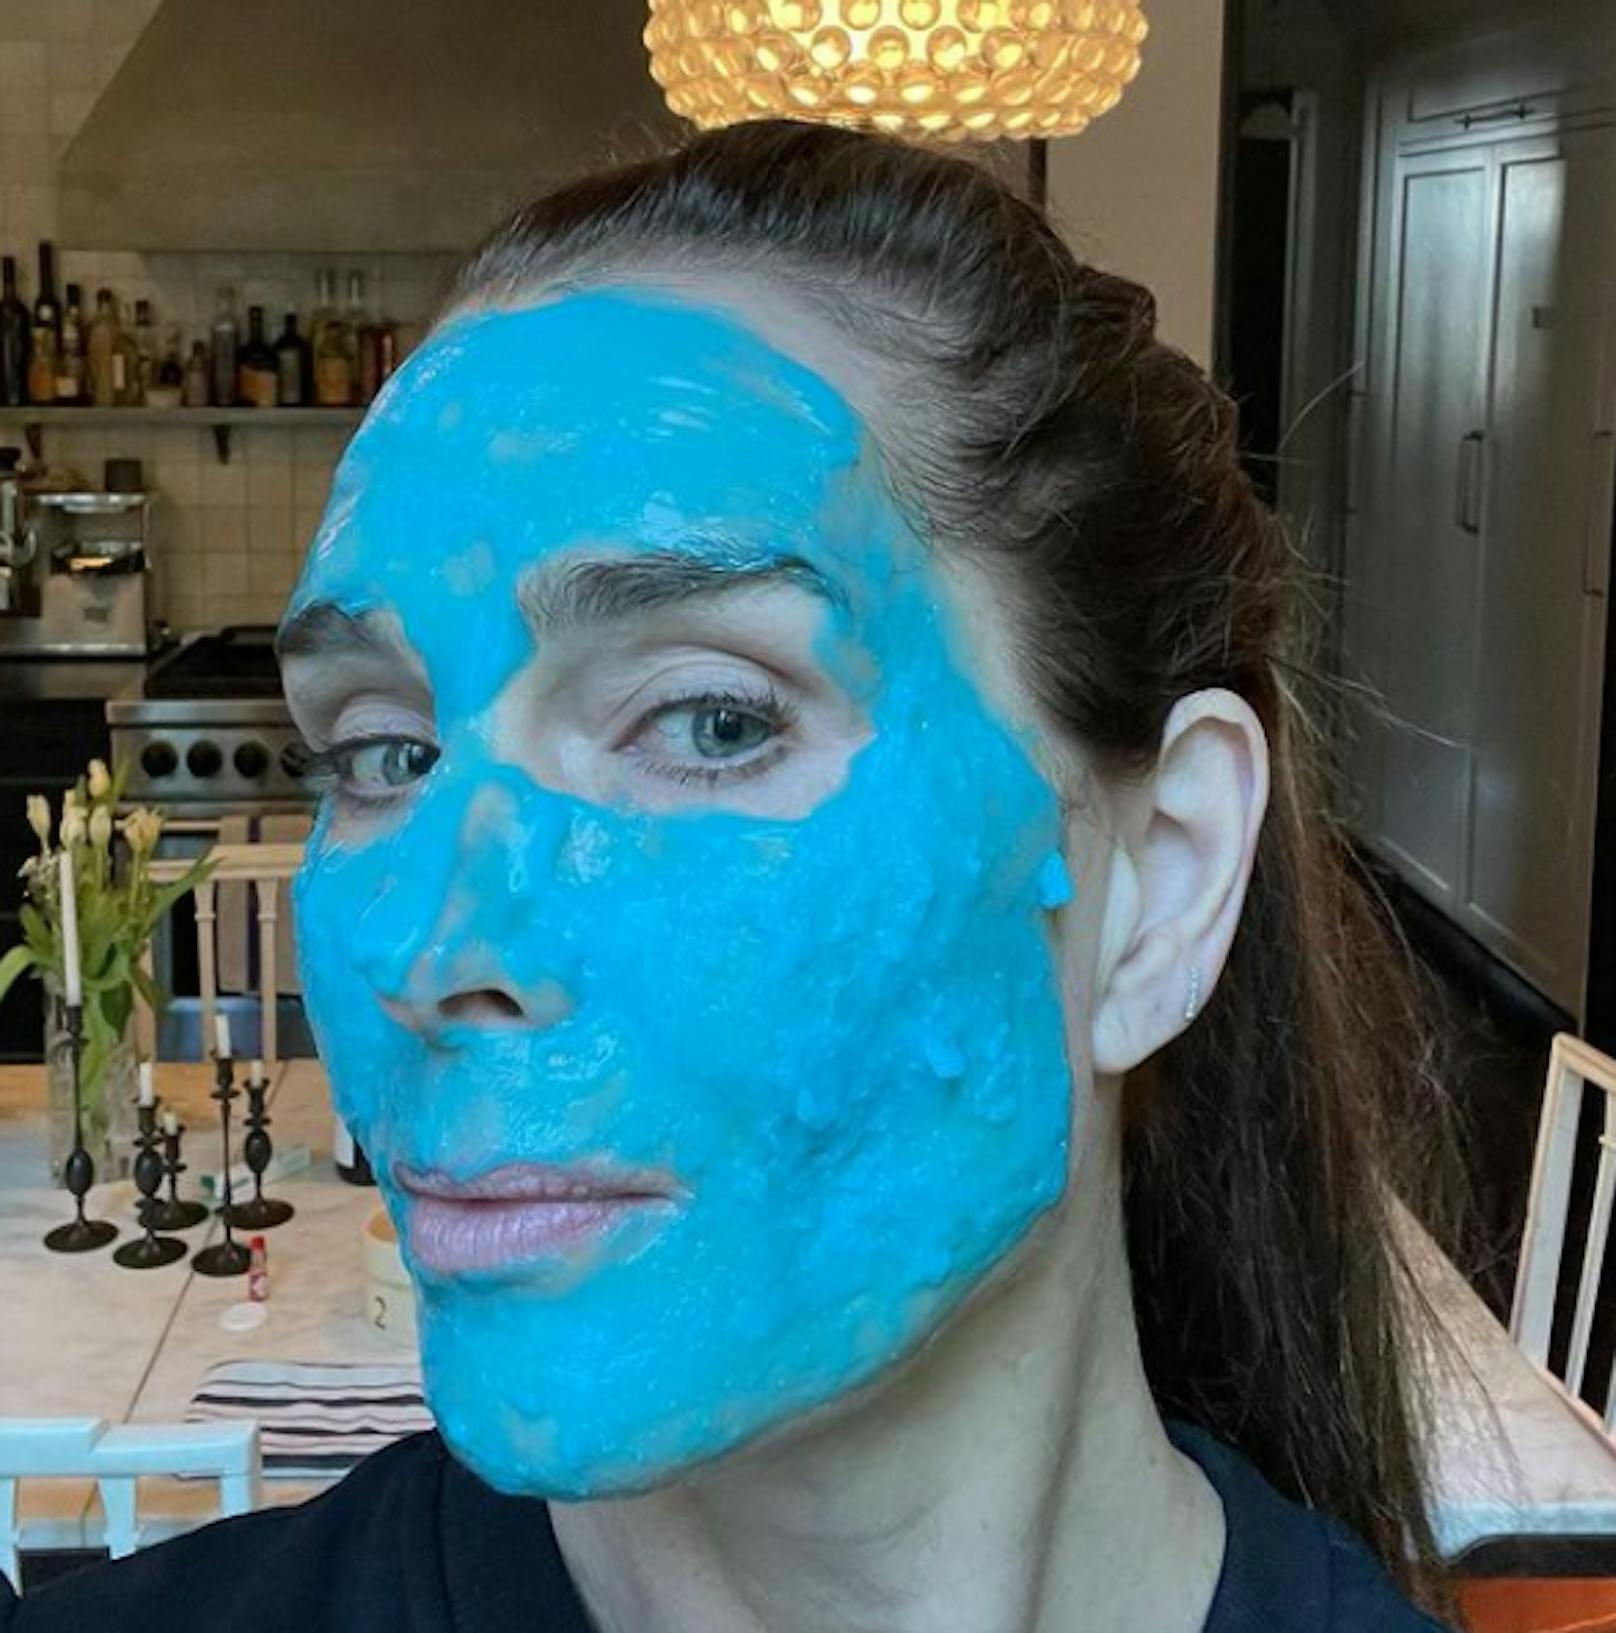 Schauspielerin Brooke Shields zeigt ihre blaue "Beauty"-Maske. Ganz schön gruselig!